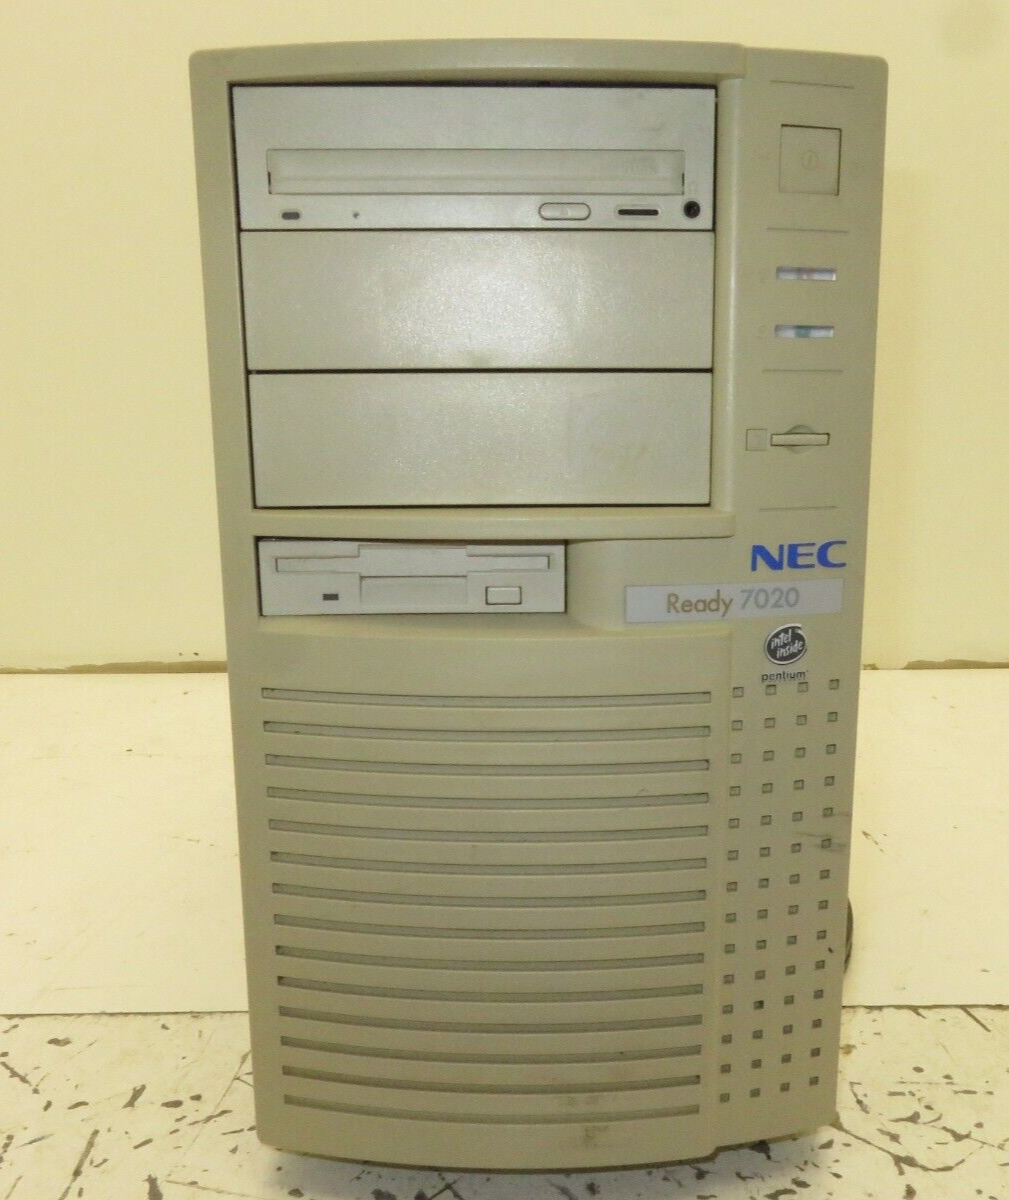 NEC Ready 7020 Desktop Computer Intel Pentium 75MHz 16MB Ram No HDD